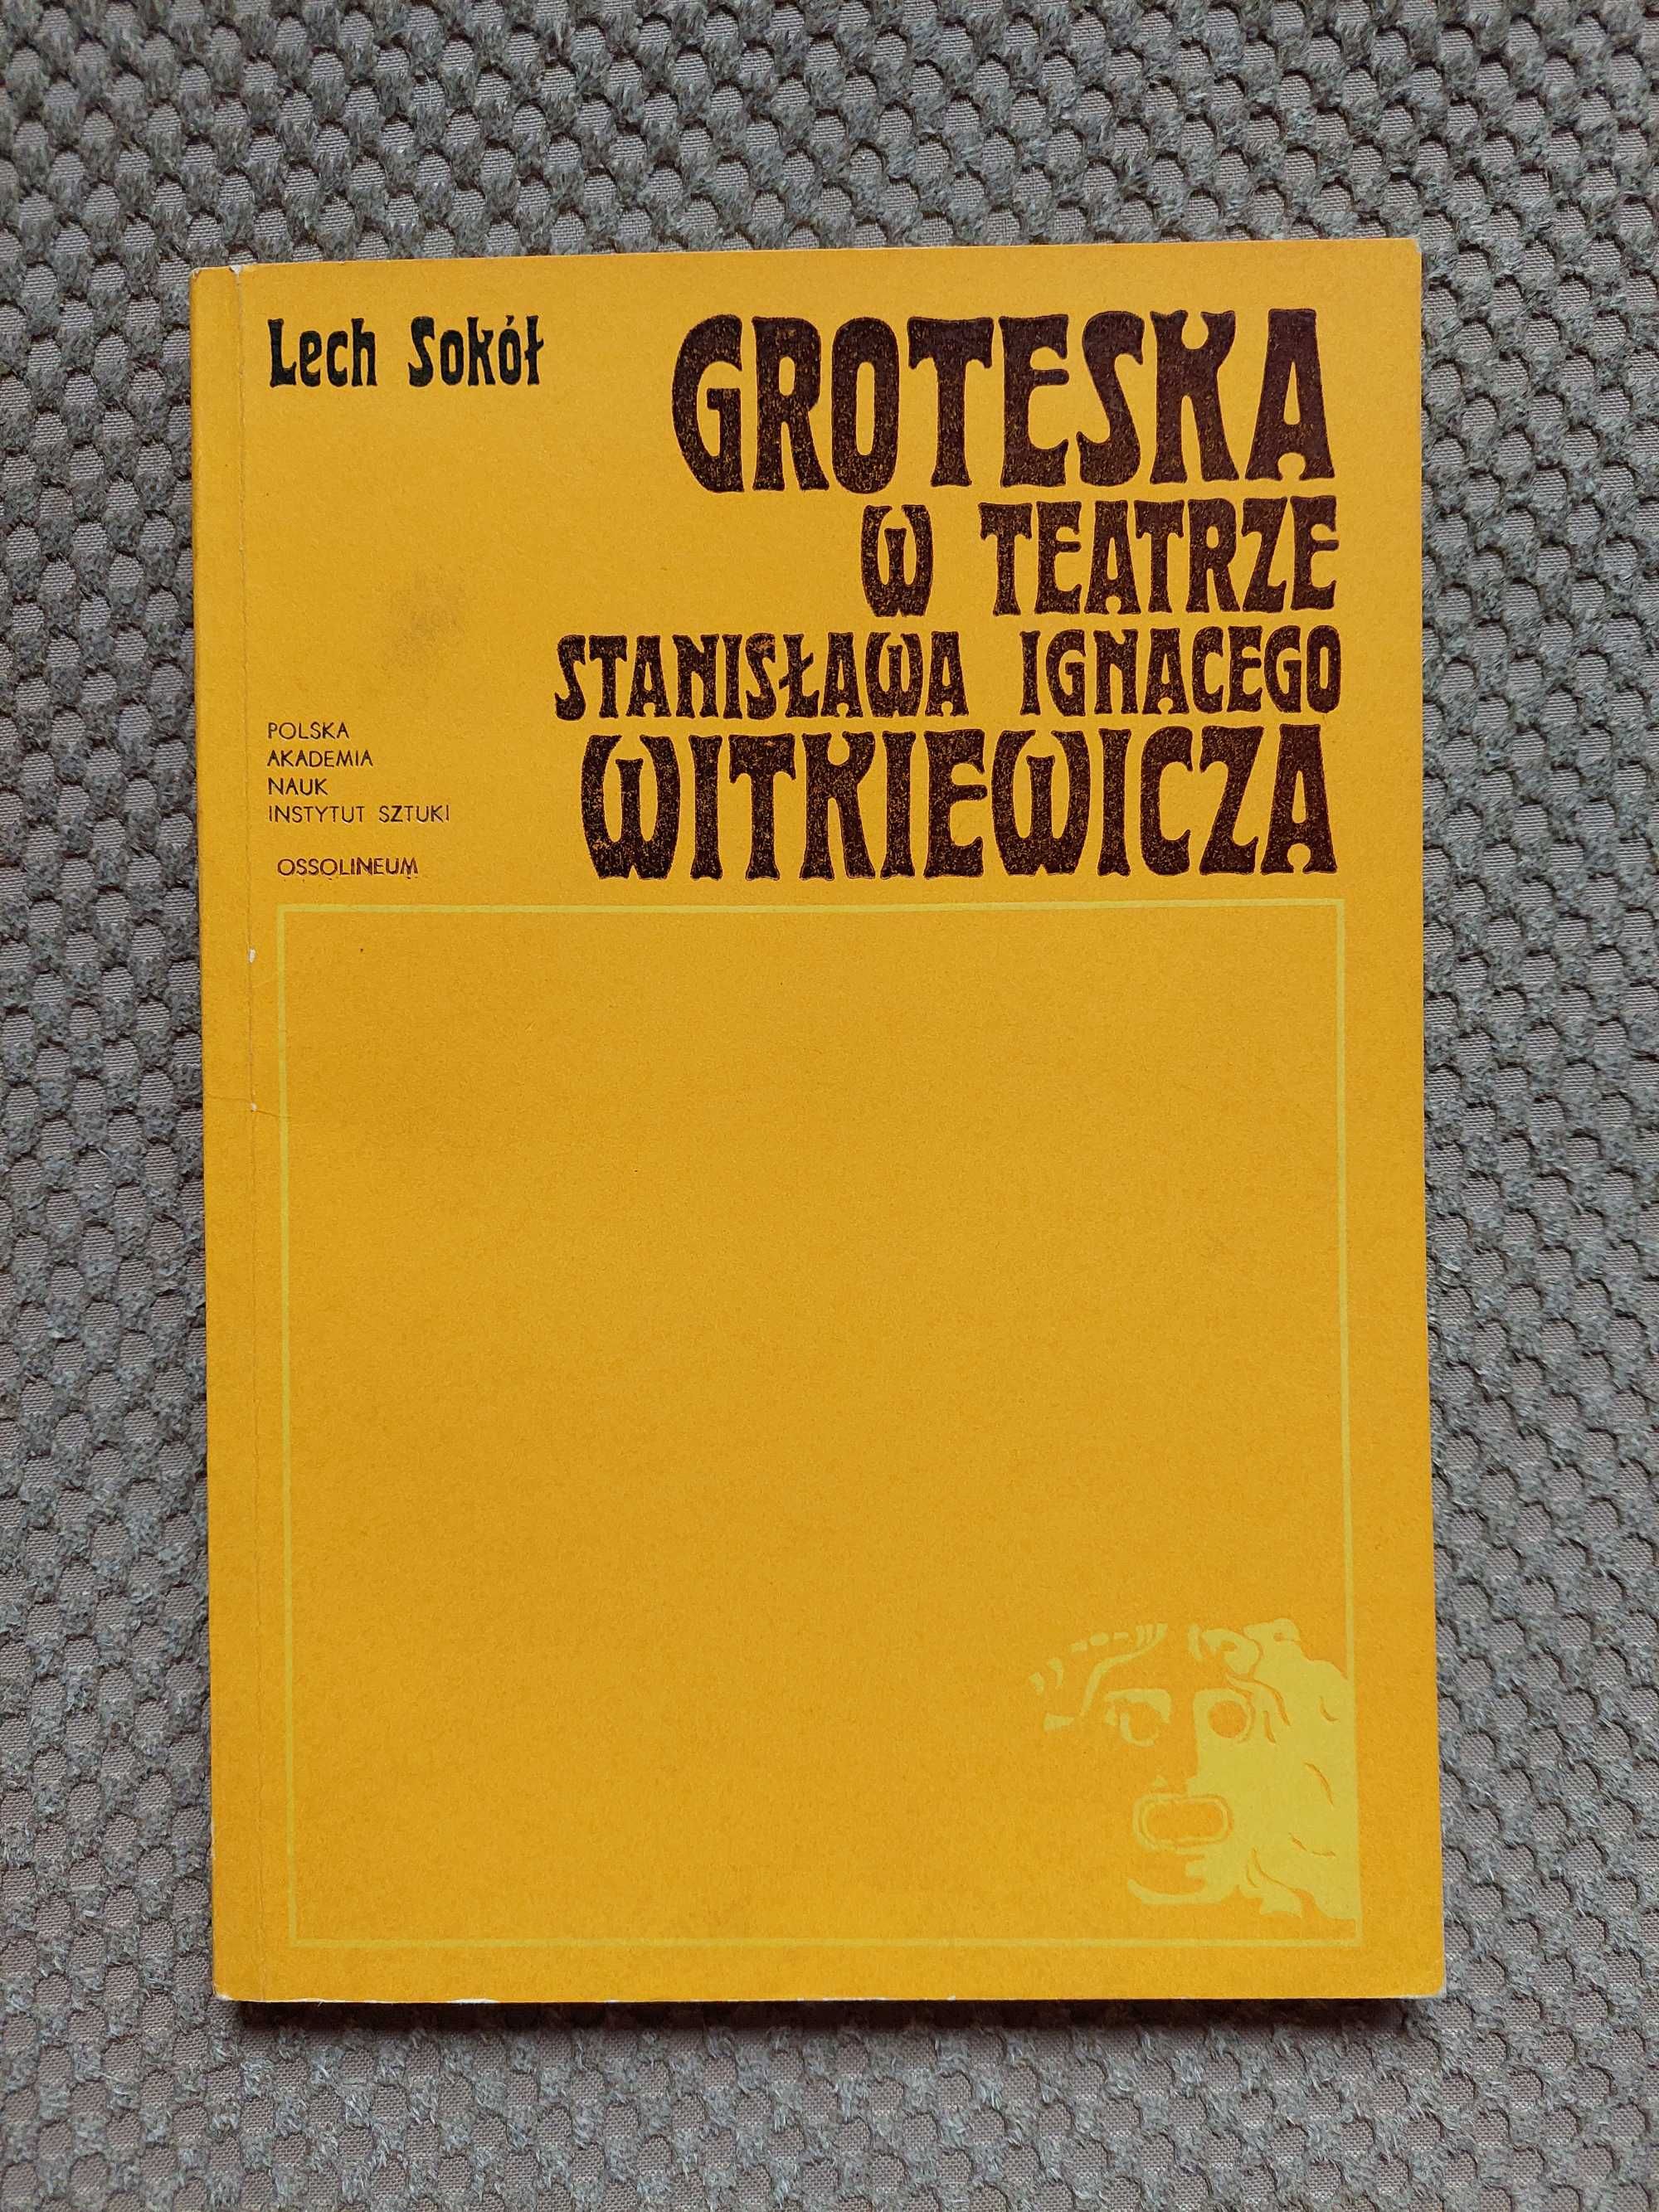 "Groteska w teatrze Stanisława Ignacego Witkiewicza" Lech Sokół